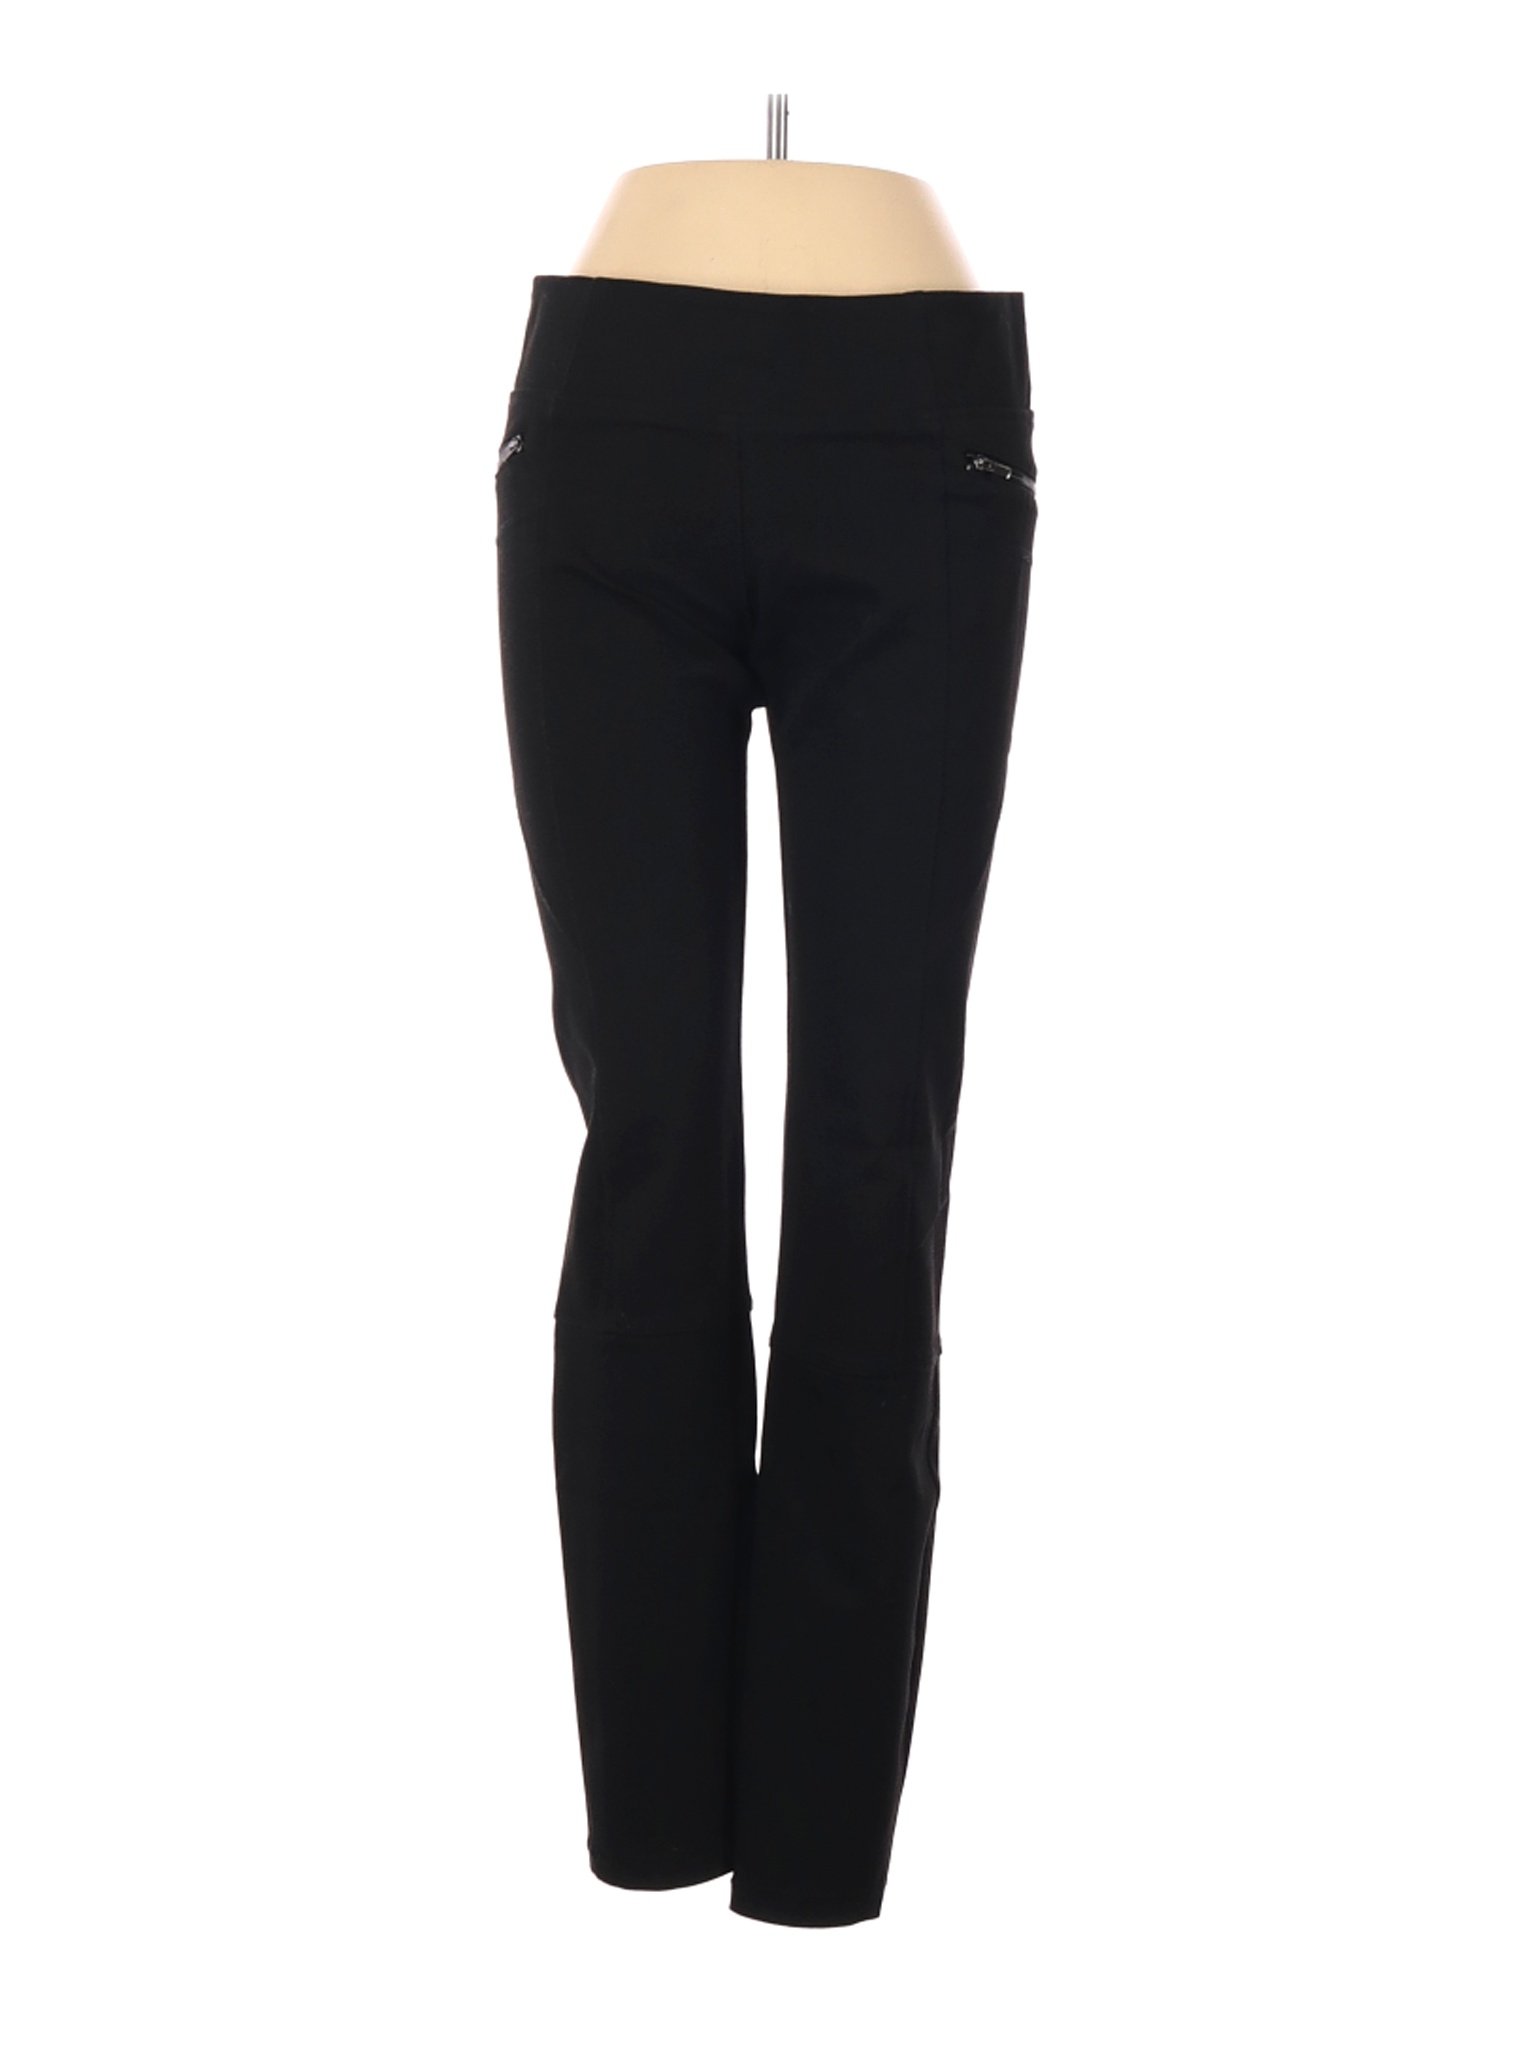 Zara Women Black Casual Pants 24W | eBay